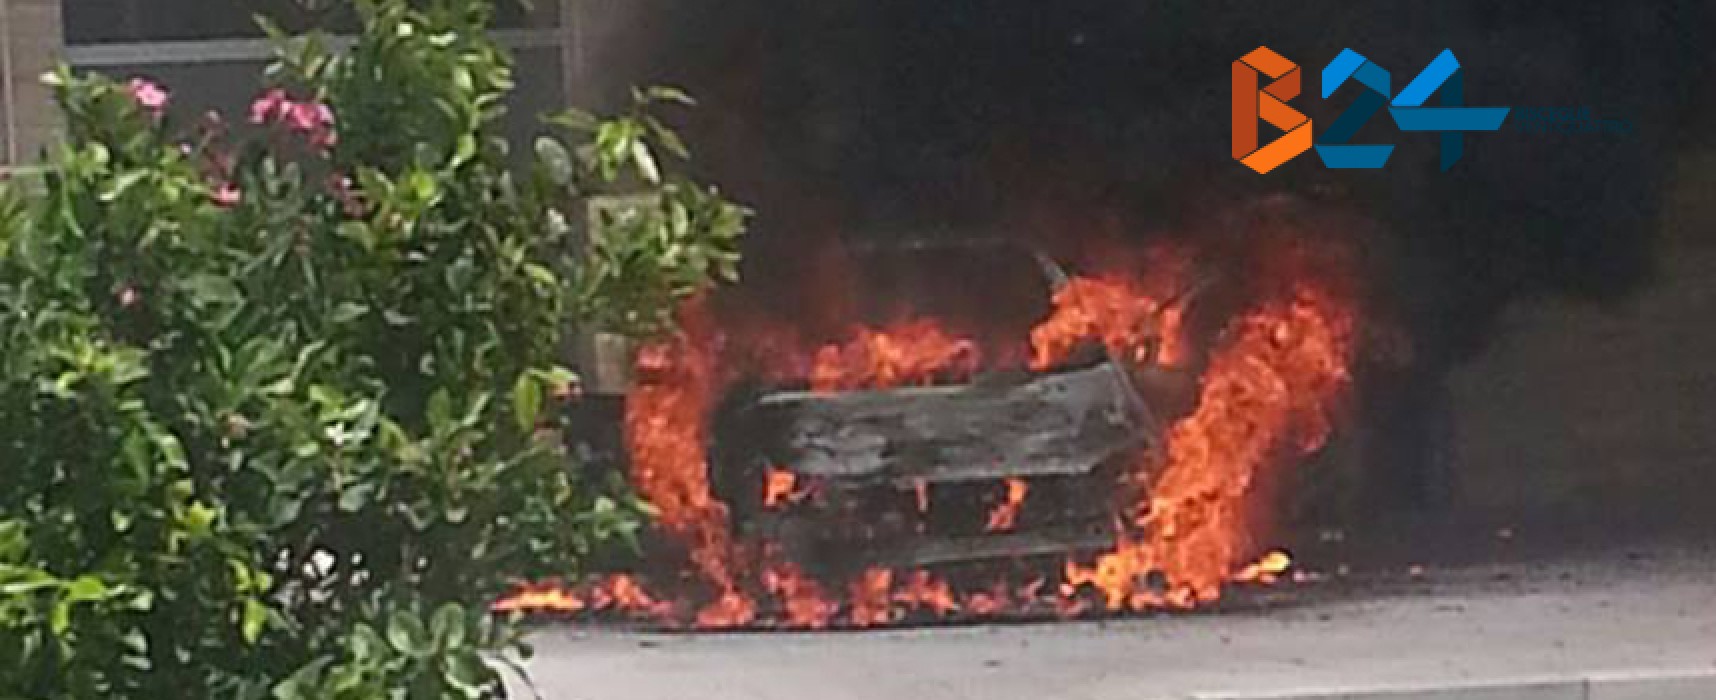 Macchina di un autosalone prende fuoco su marciapiede in zona San Pietro